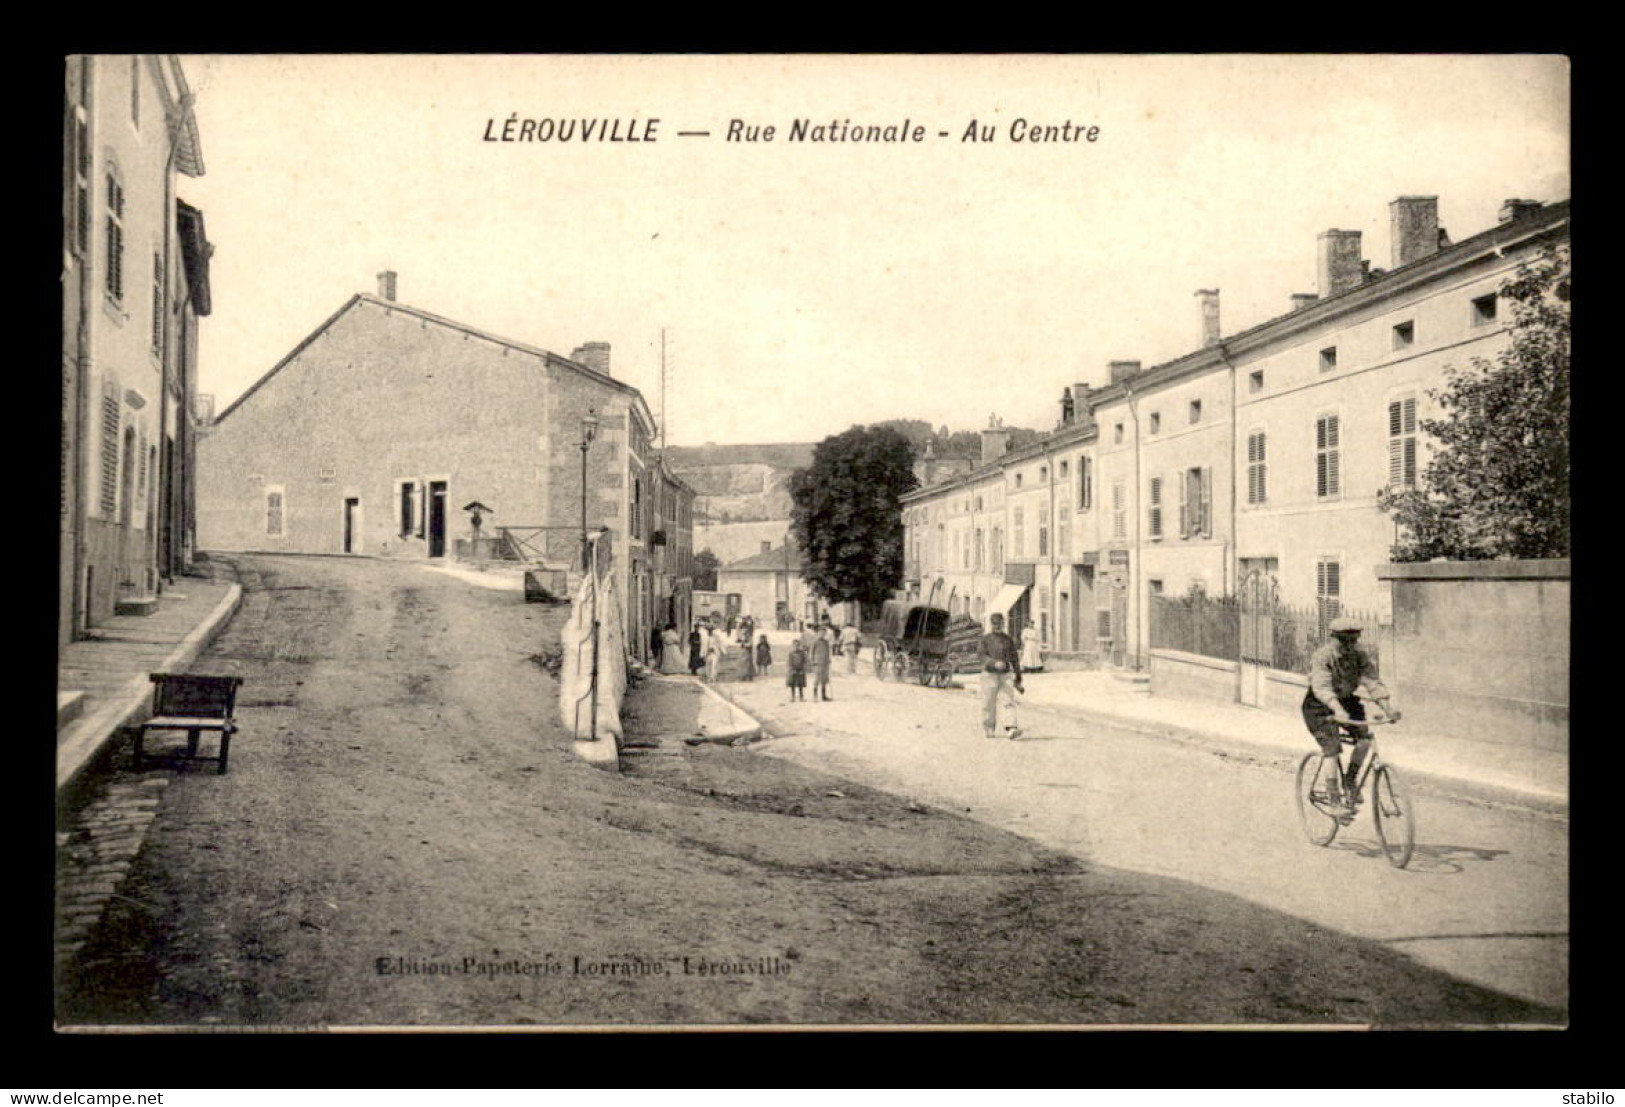 55 - LEROUVILLE - RUE NATIONALE - AU CENTRE - EDITEUR PAPETERIE LORRAINE - Lerouville